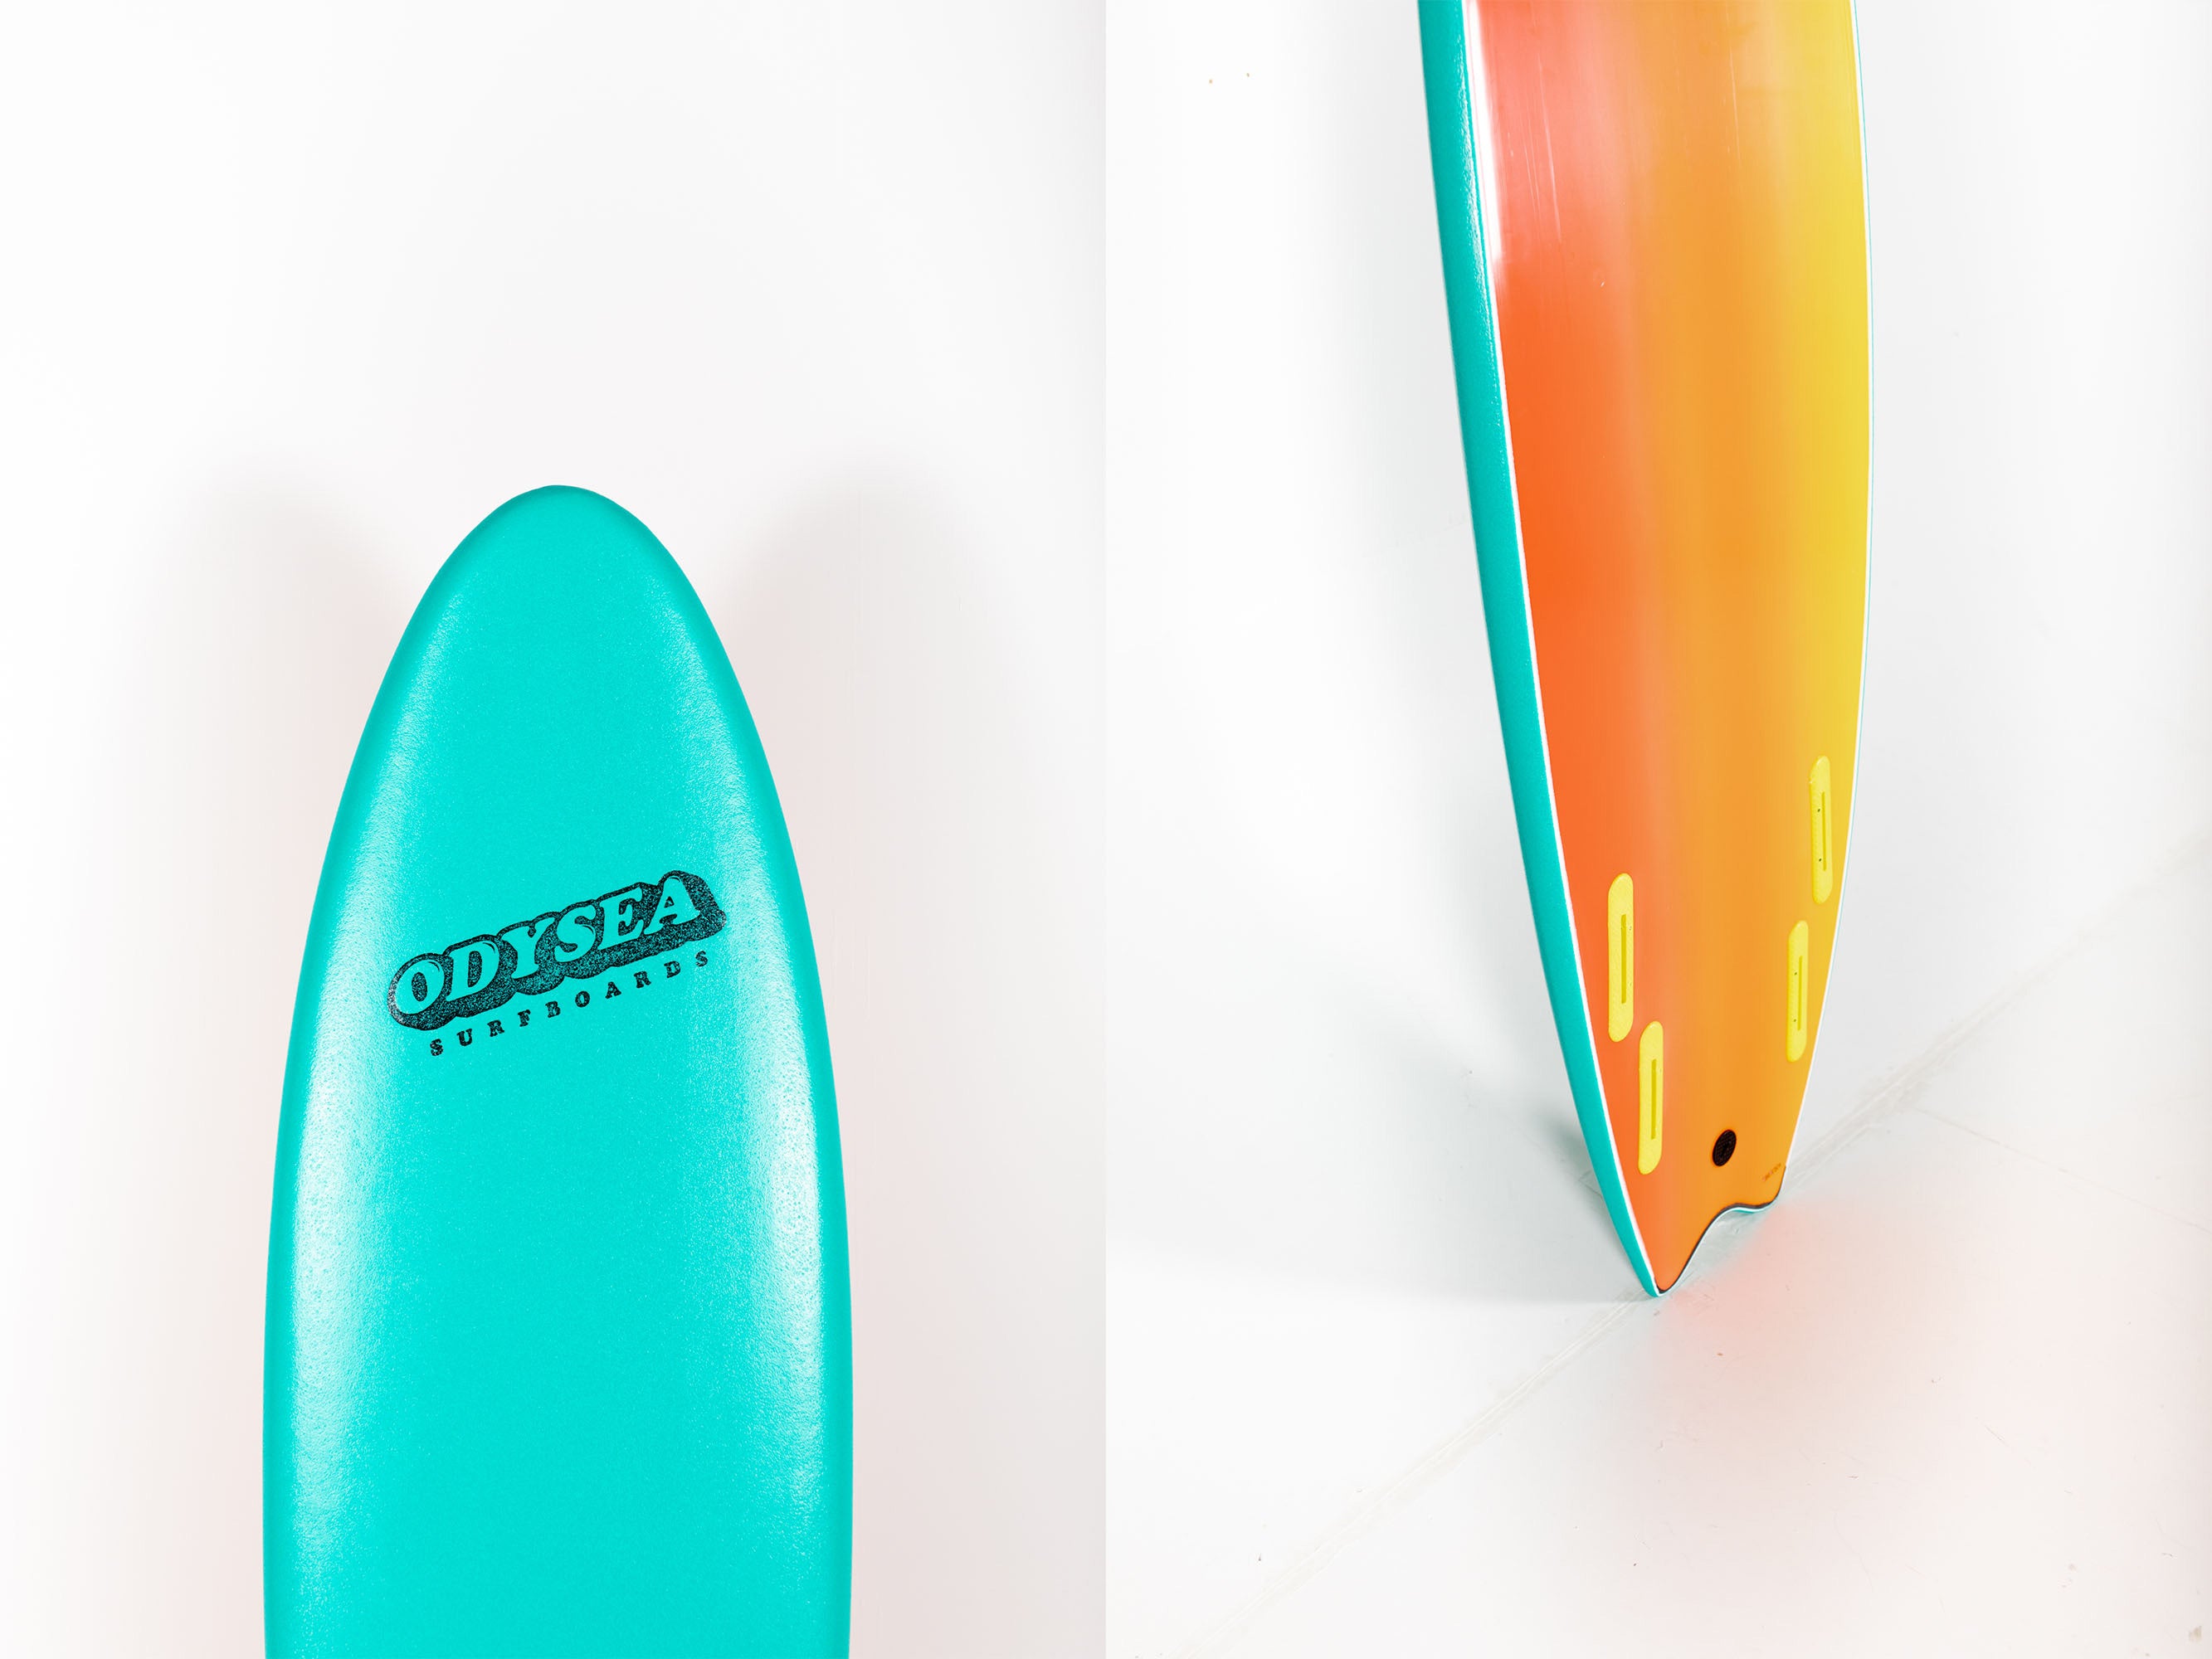 Catch Surf - ODYSEA 60 SKIPPER QUAD - 6'0" x 21.5" x 3" x 48L.